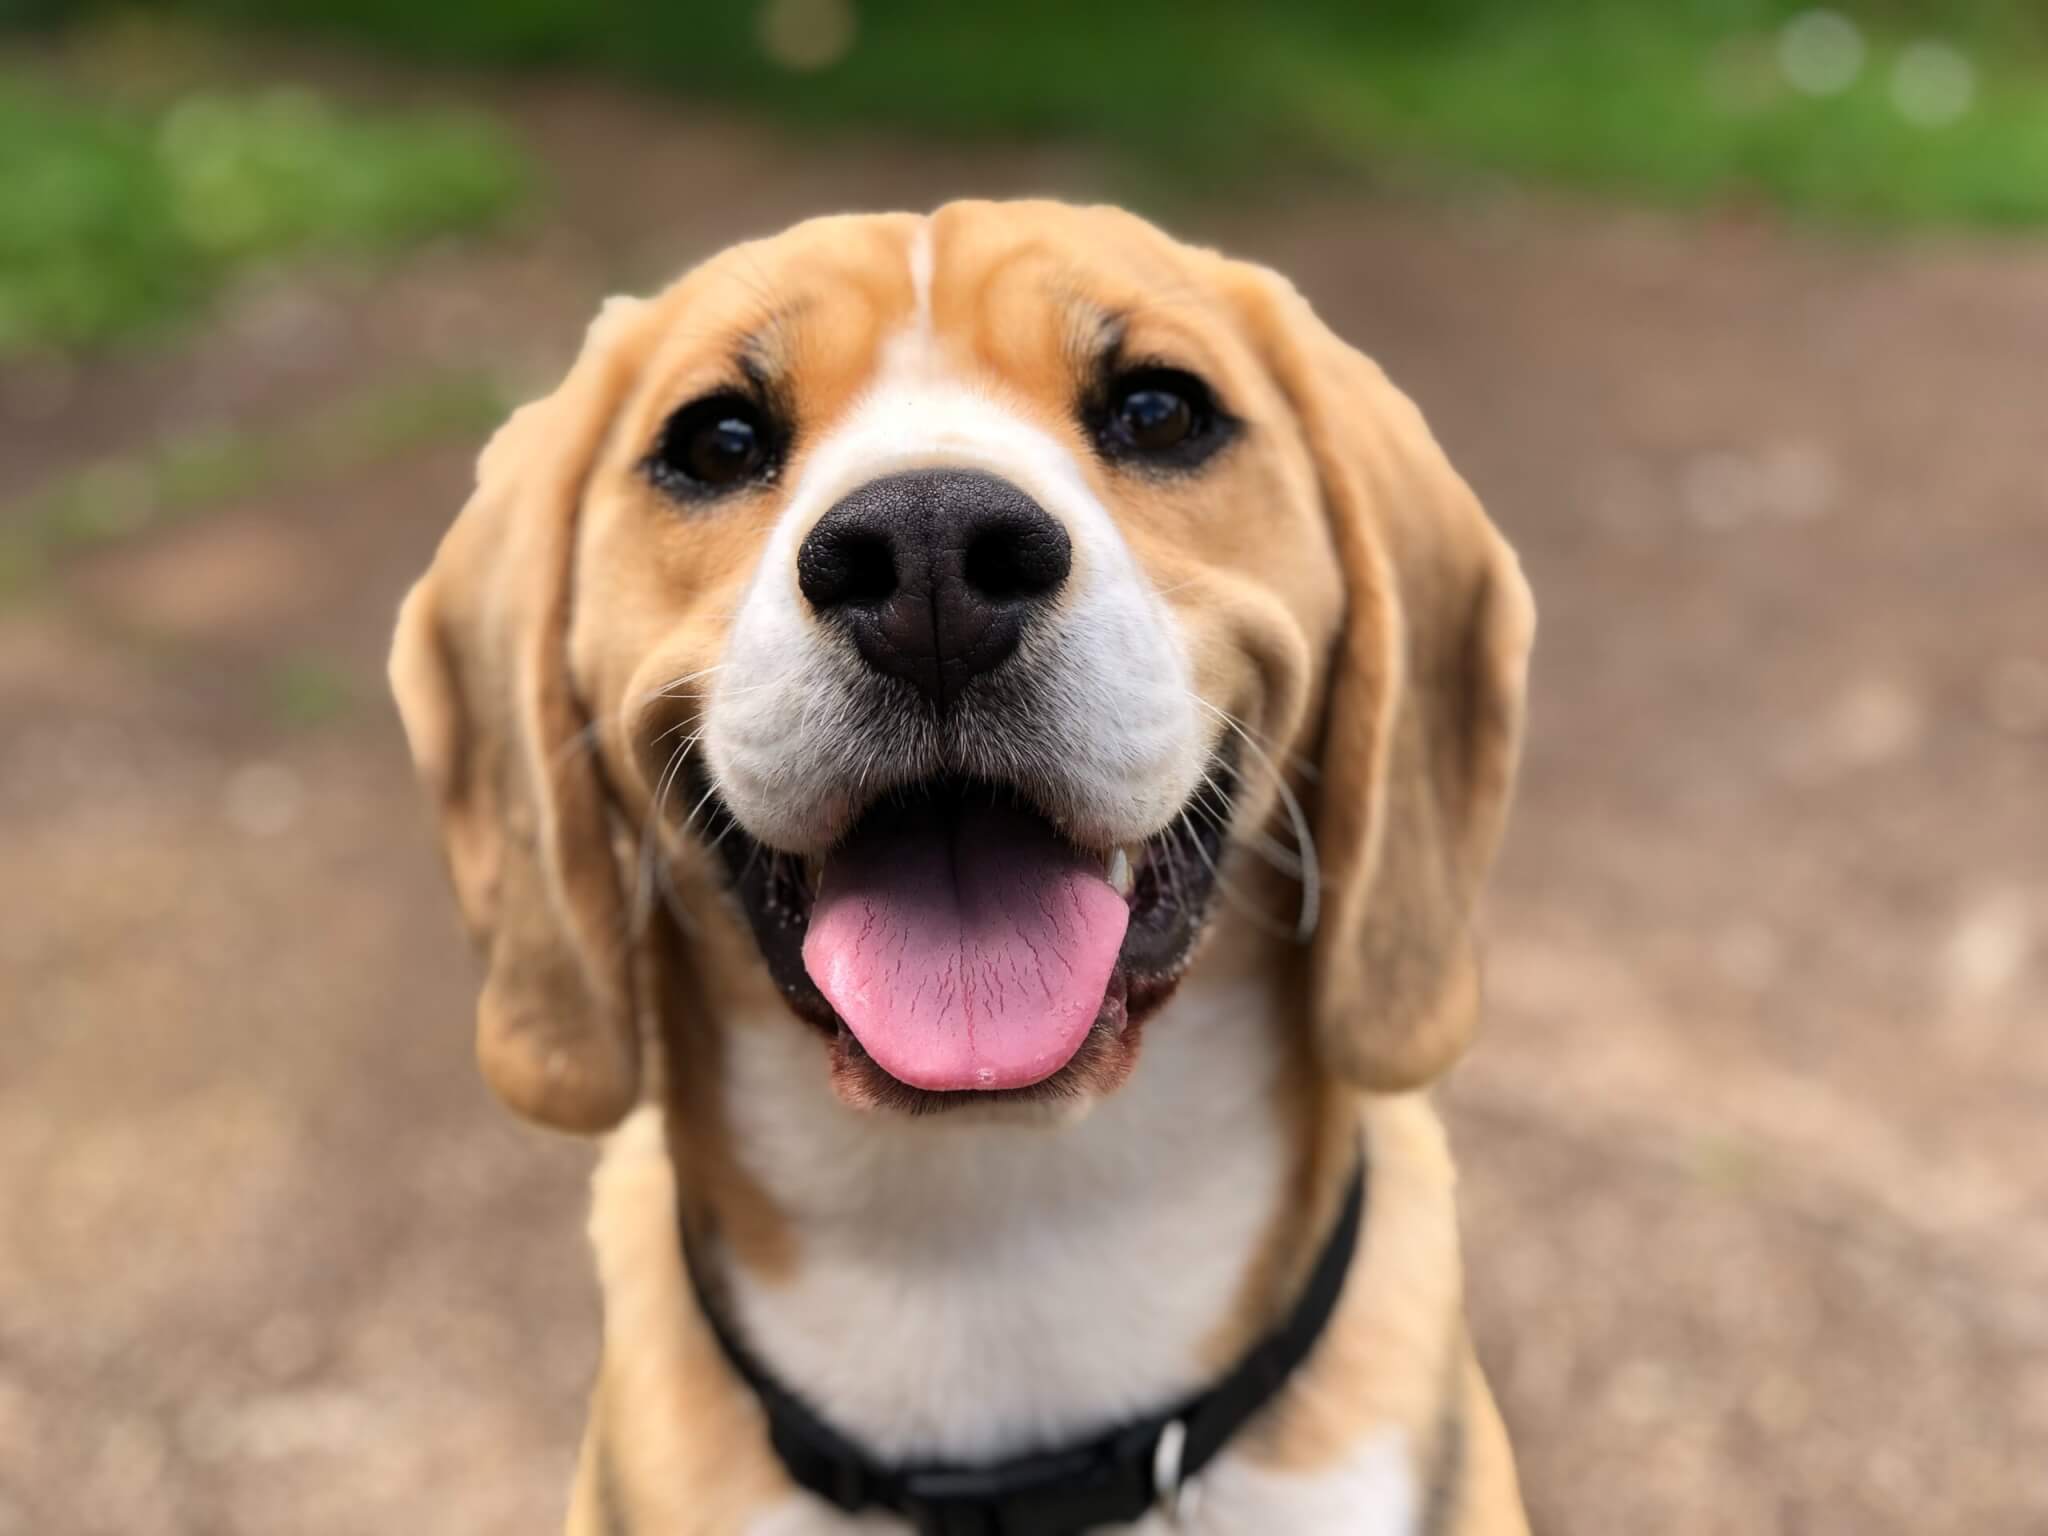 A happy Beagle outside